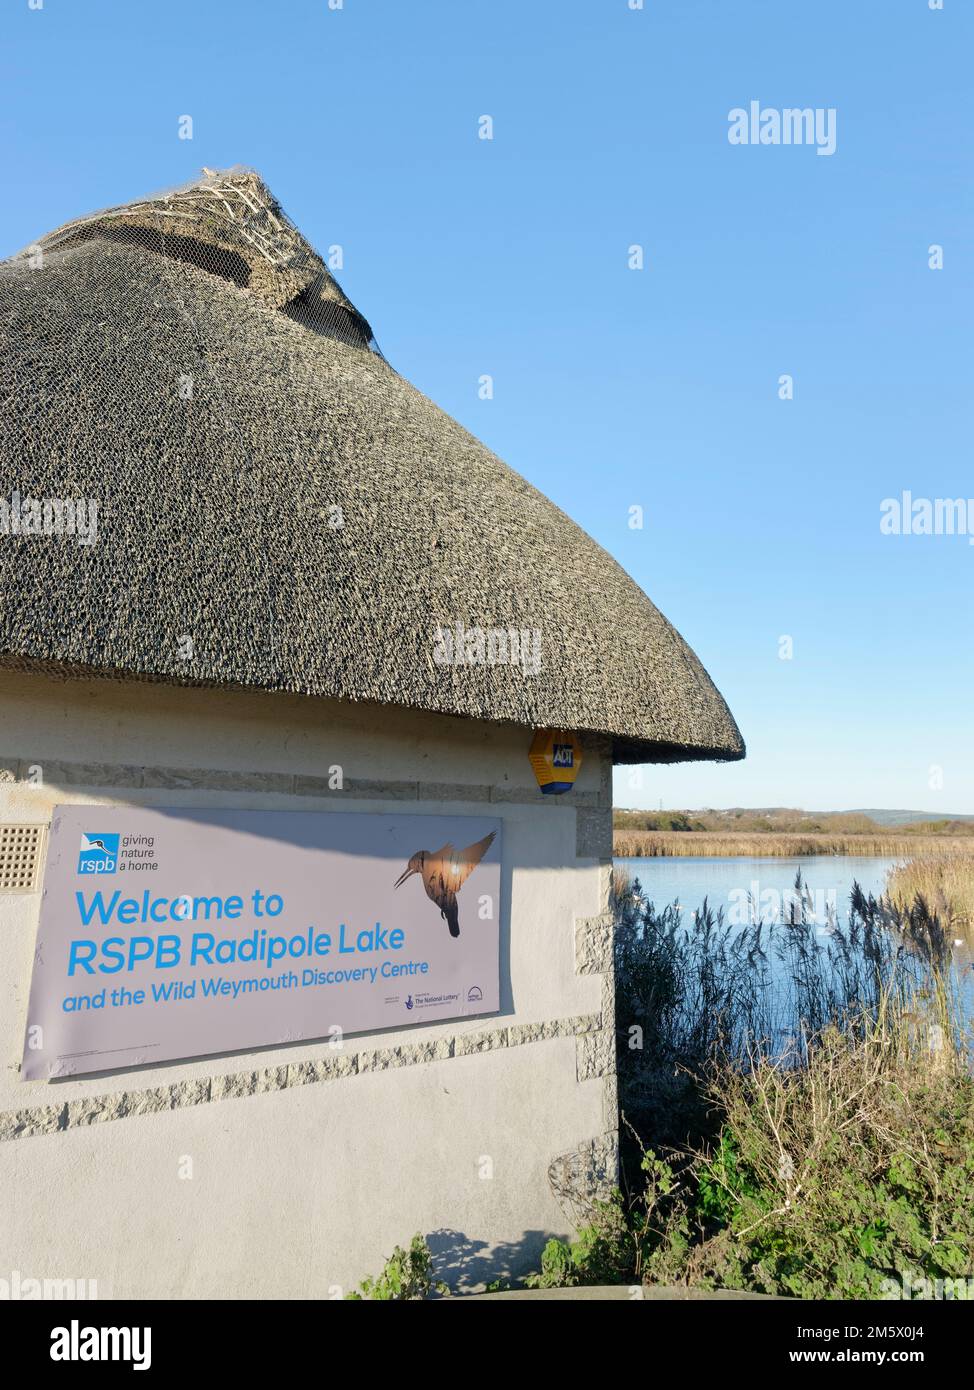 Centro visitatori accanto a una grande laguna costiera orlata da canneti, RSPB Radipole Lake Nature Reserve, Weymouth, Dorset, Regno Unito, dicembre Foto Stock